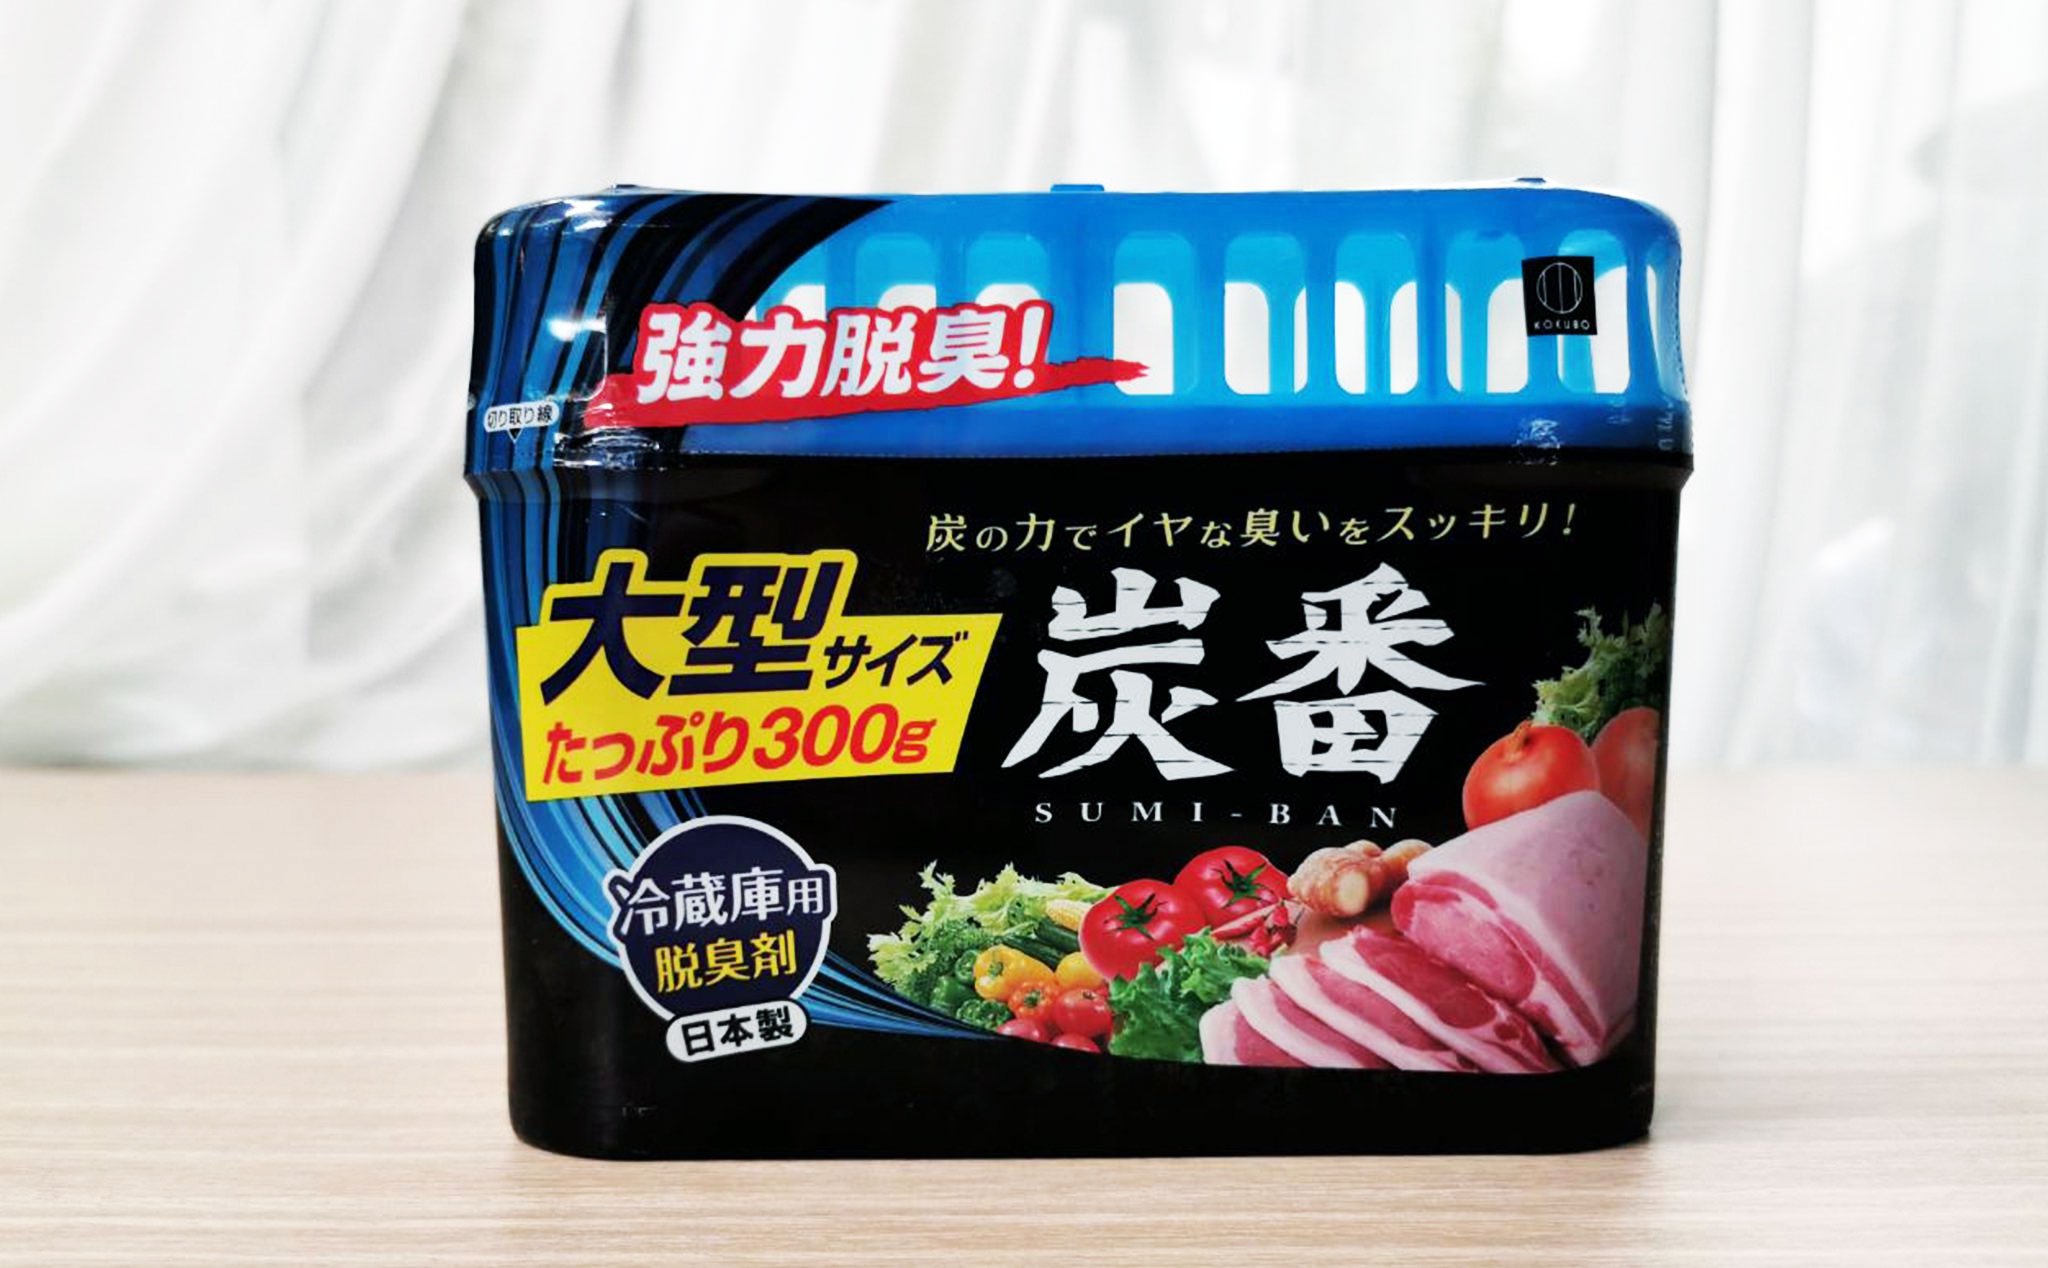 Trên tay cục sáp khử mùi tủ lạnh Sumi-Ban: Khử mùi rất tốt, hàng Nhật, 105 ngàn